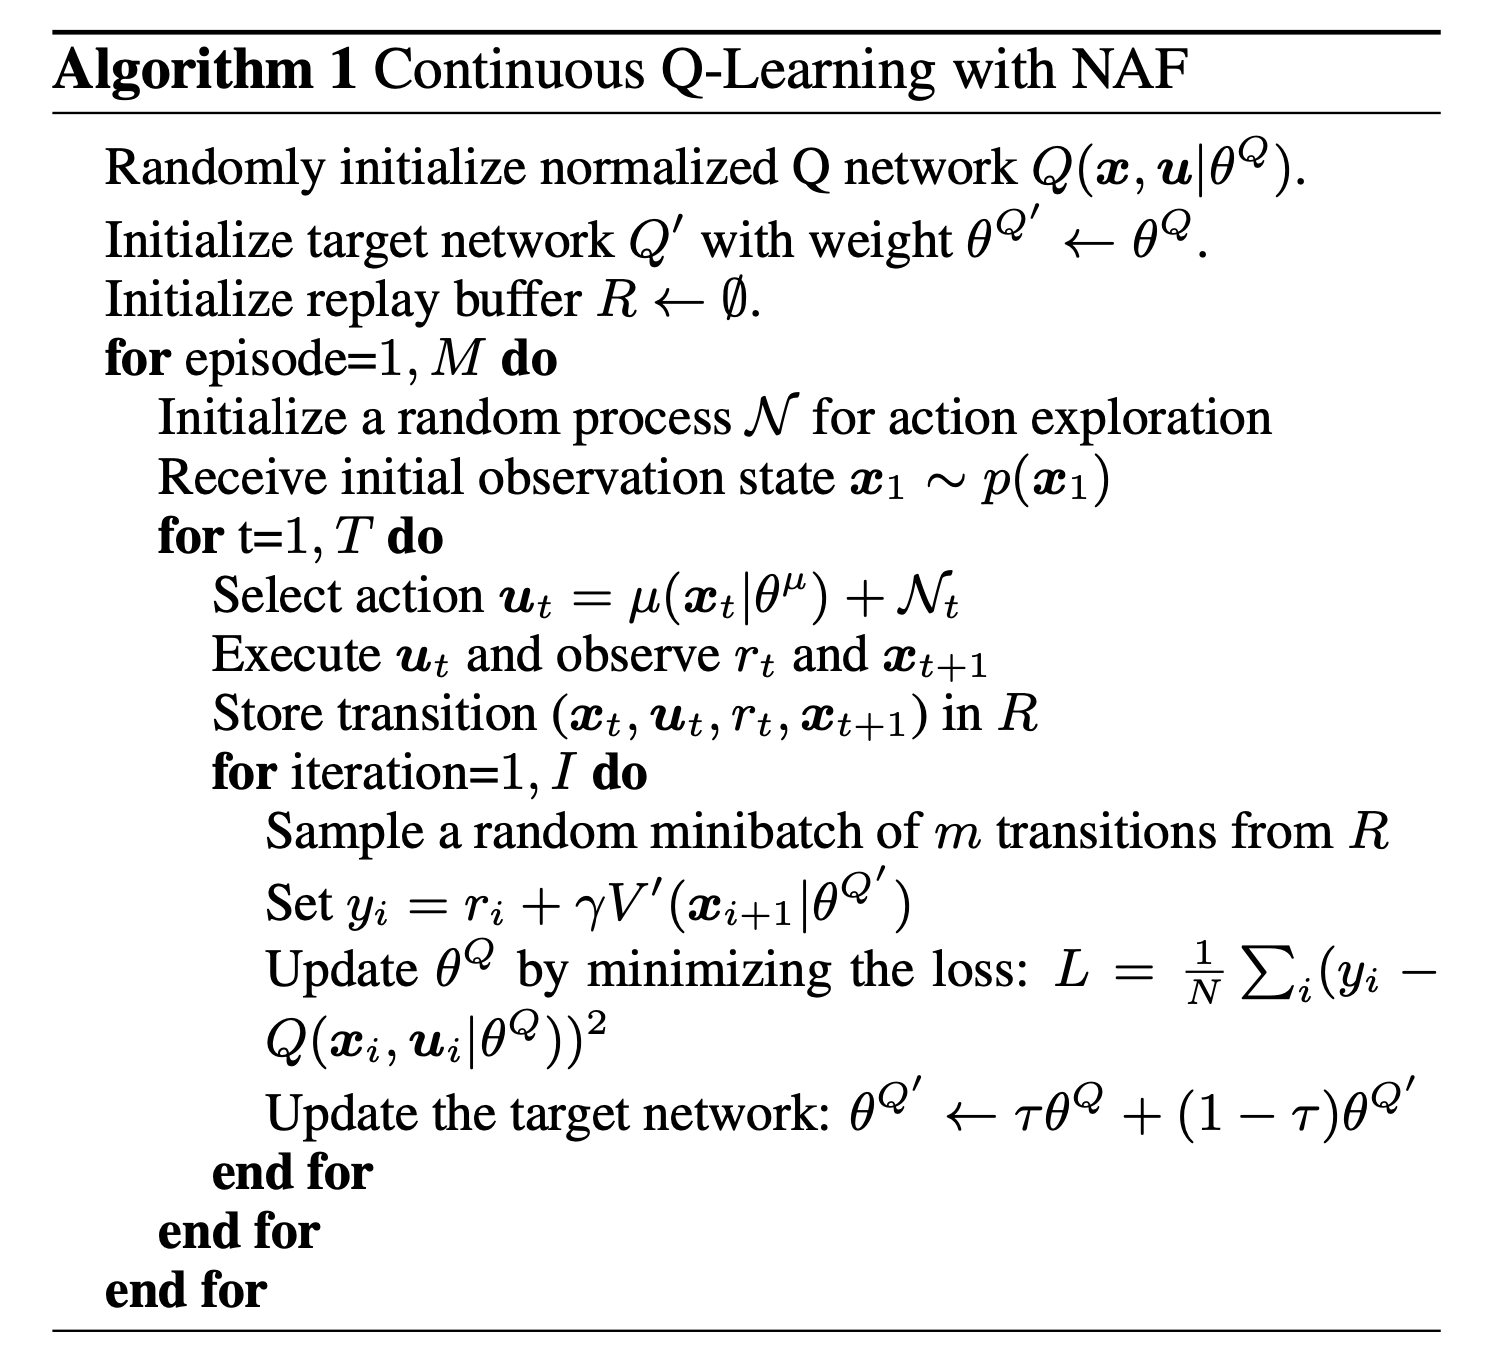 naf_algorithm